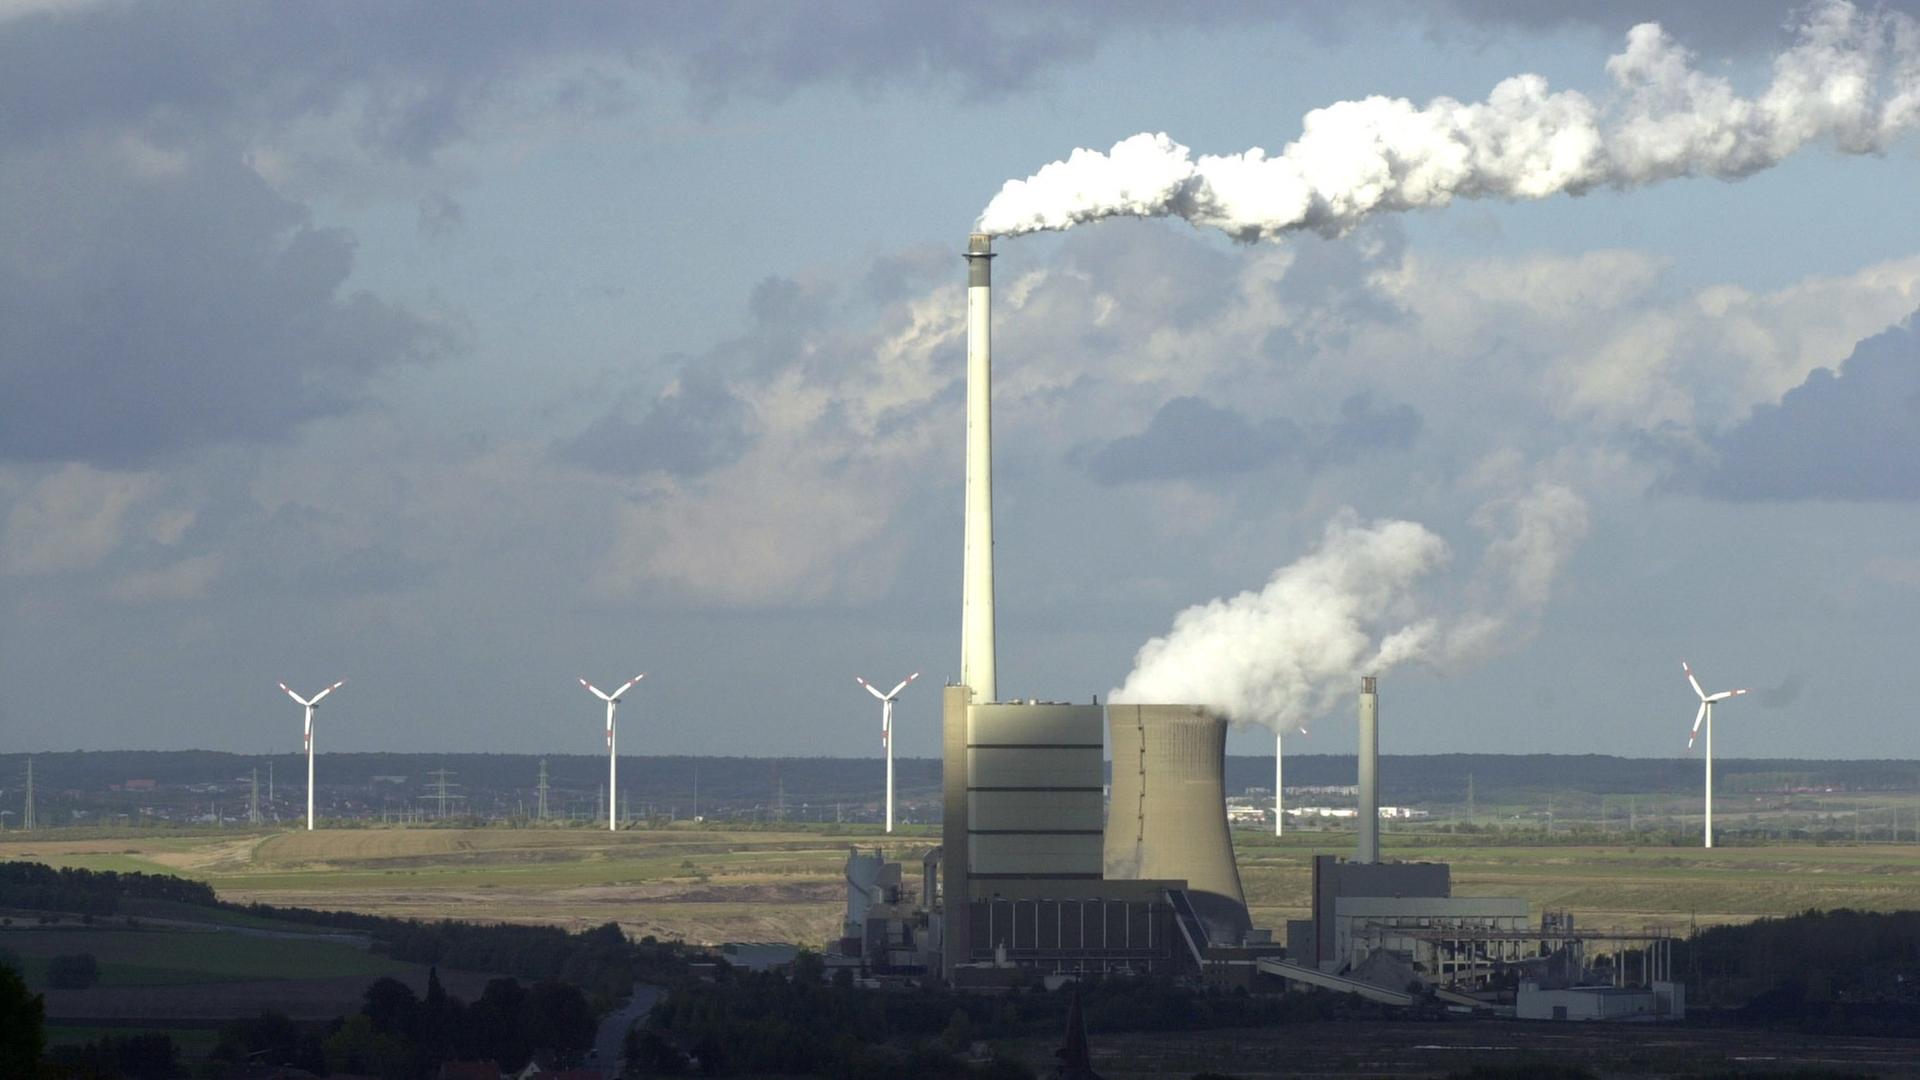 Der Blick auf das Braunkohlekraftwerk und die Müllverbrennungsanlage Buschhaus bei Helmstedt, aufgenommen am 04.10.2003. Im Vordergrund sind die Dächer des Dorfes Esbeck zu sehen, im Hintergrund stehen Windkrafträder am Rande eines aufgelassenen Tagebaus.